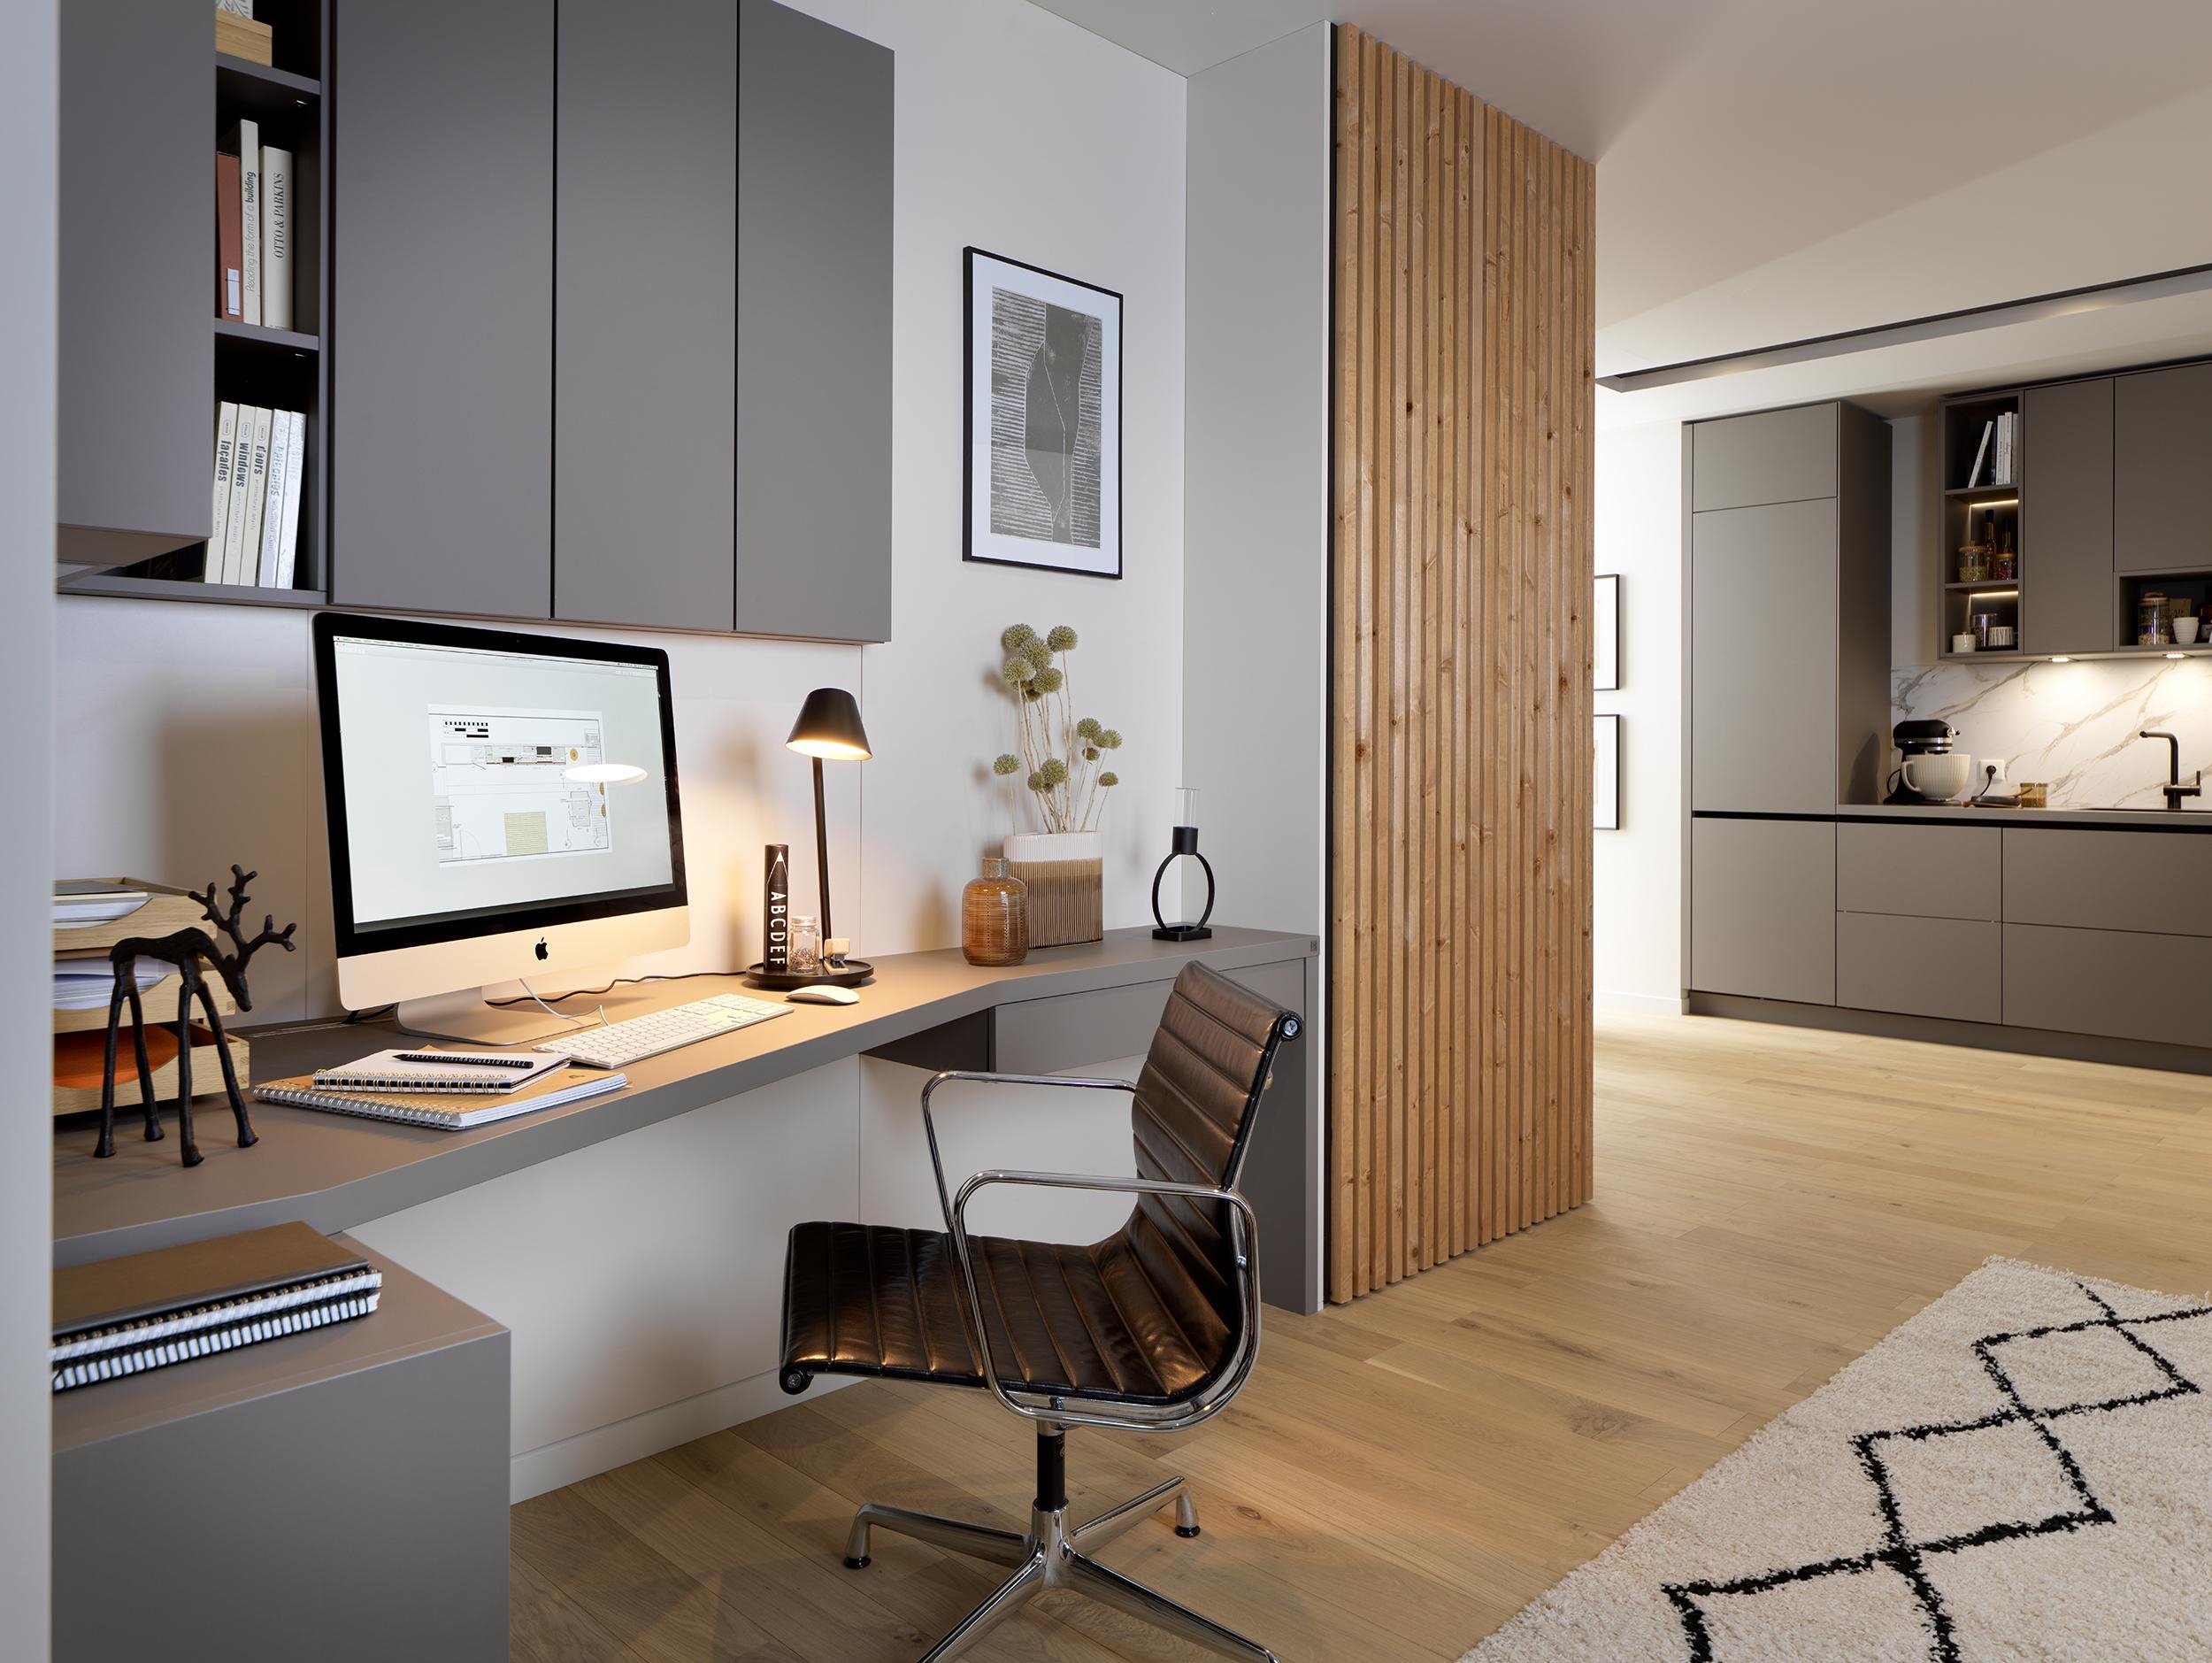 Home-Office: Viele Ideen für wenig Raum – Einrichtungslösungen von SCHMIDT machen es möglich